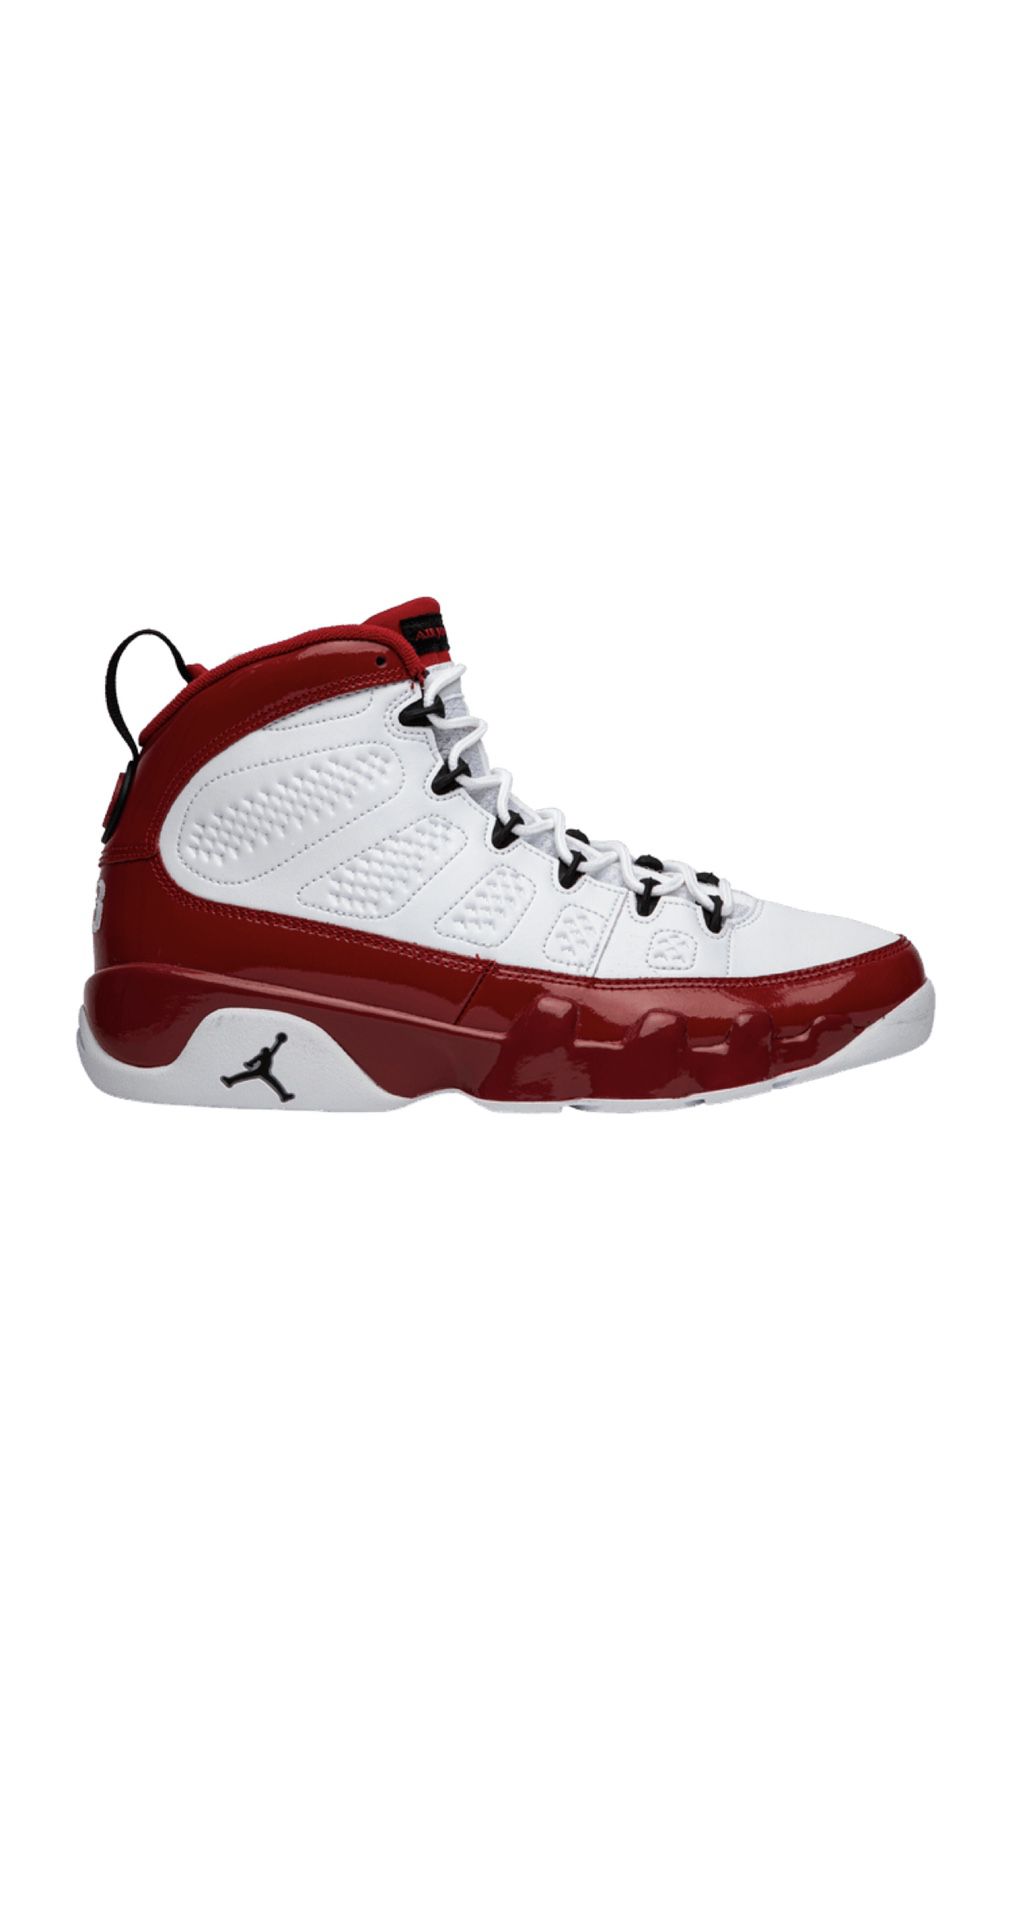 Air Jordan 9 gym red size 8 price 250